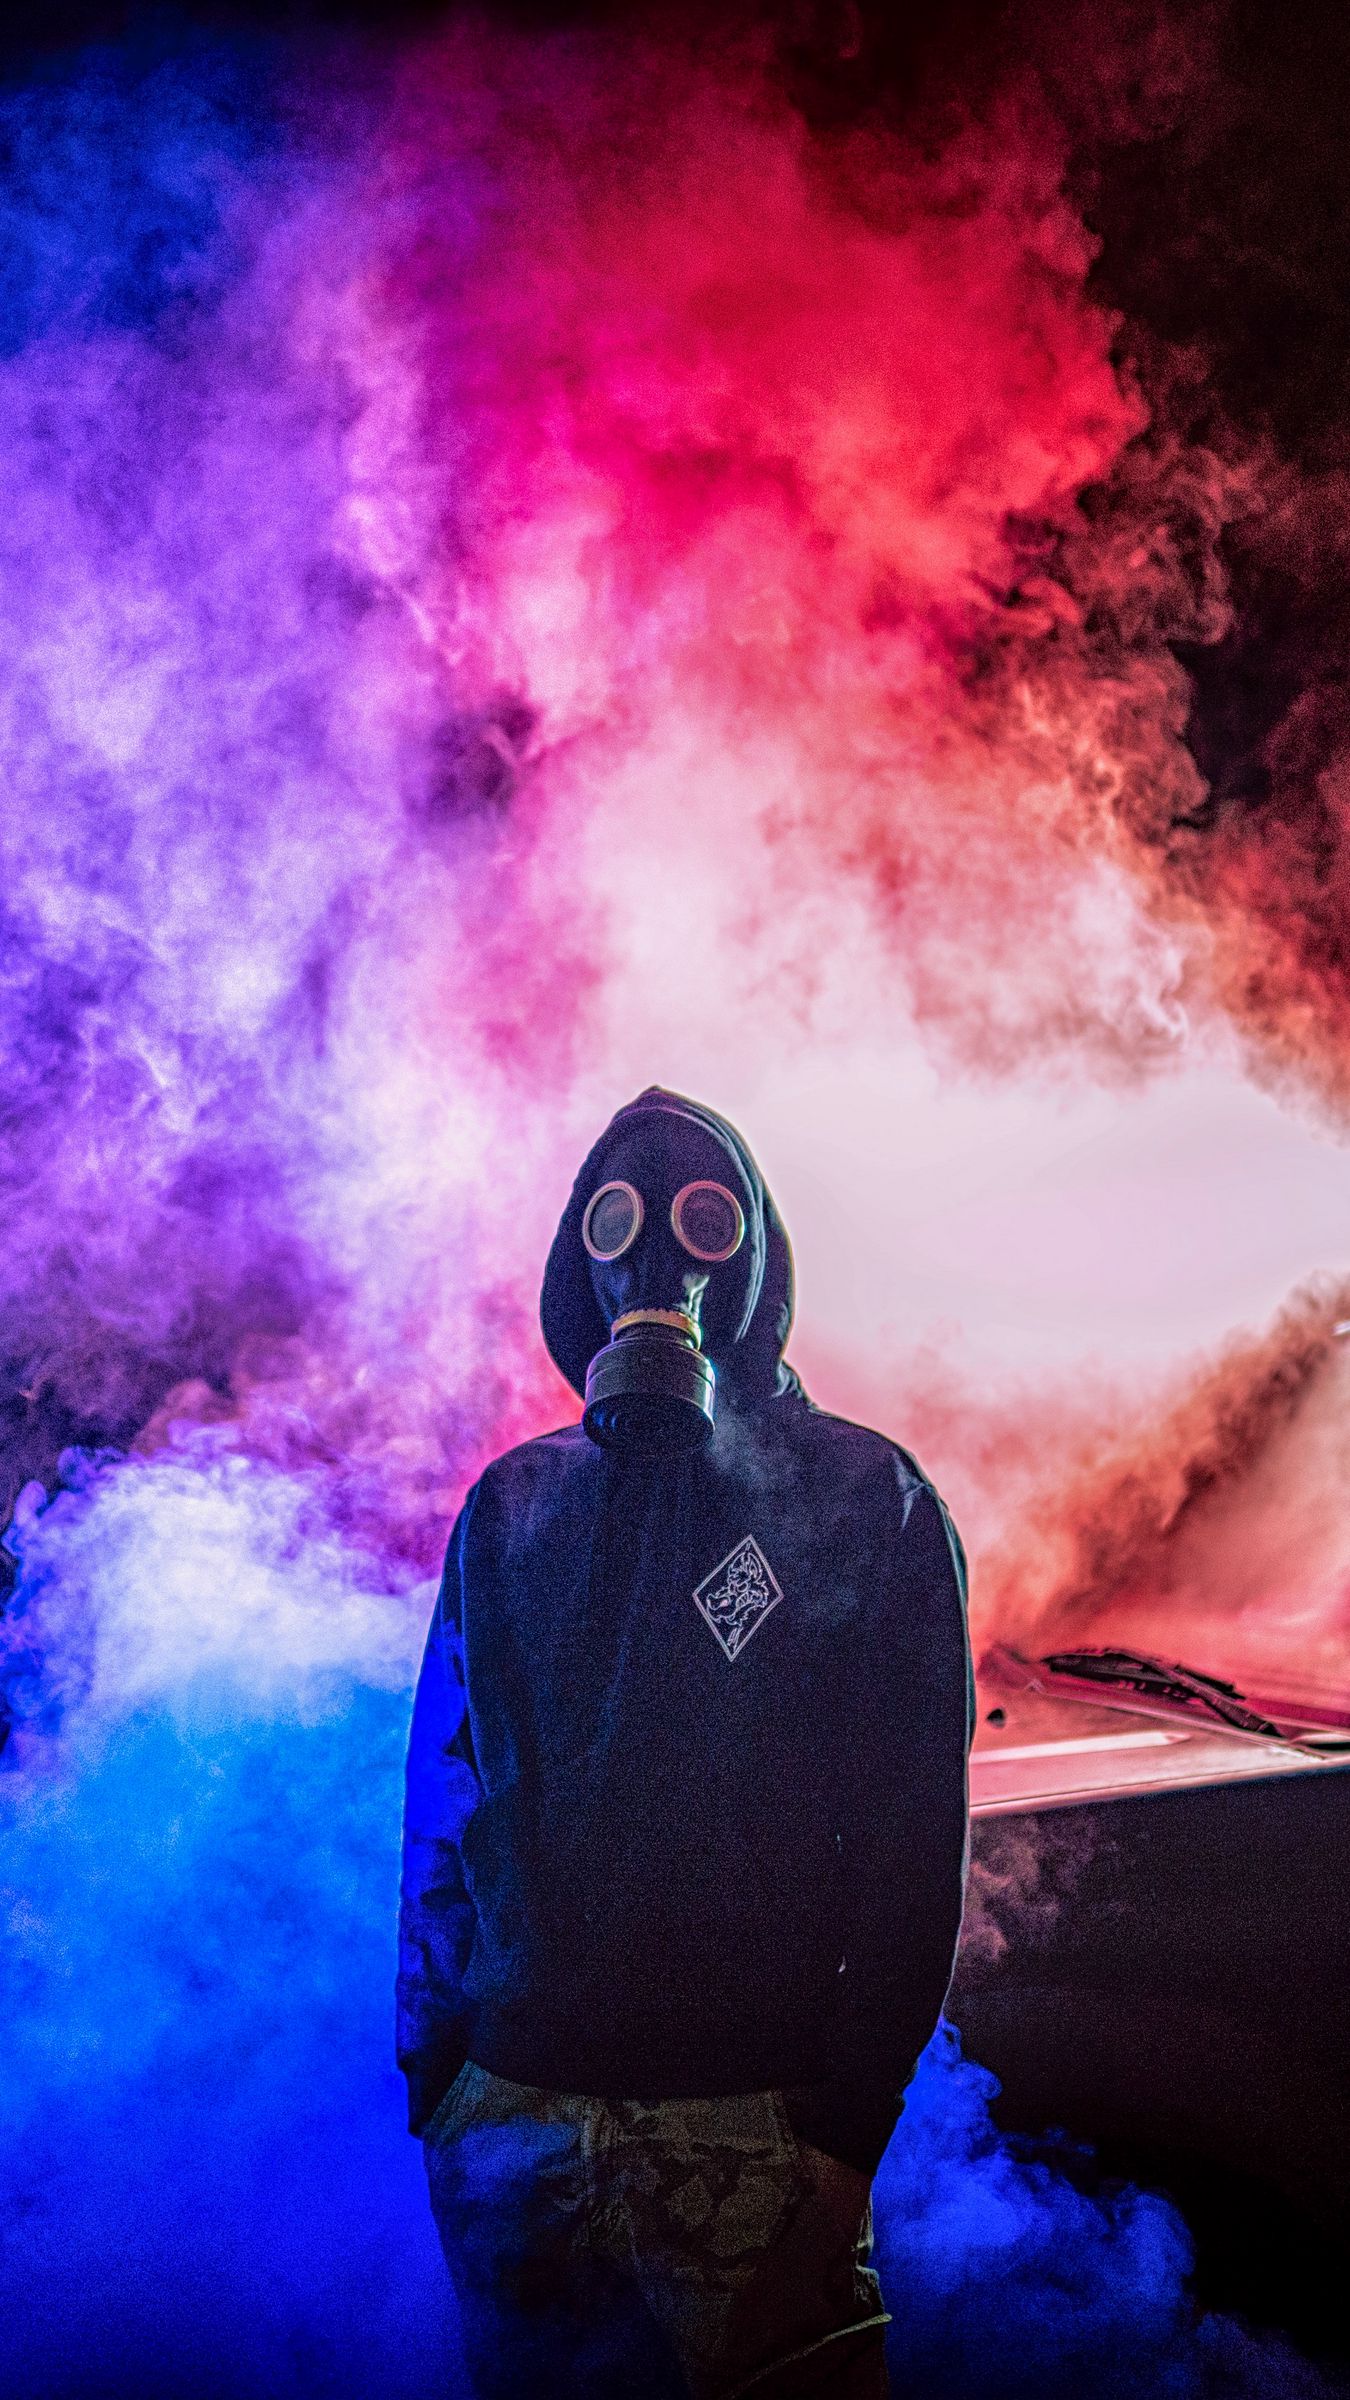 maske mann tapete,persönliche schutzausrüstung,gasmaske,maske,rauch,kostüm